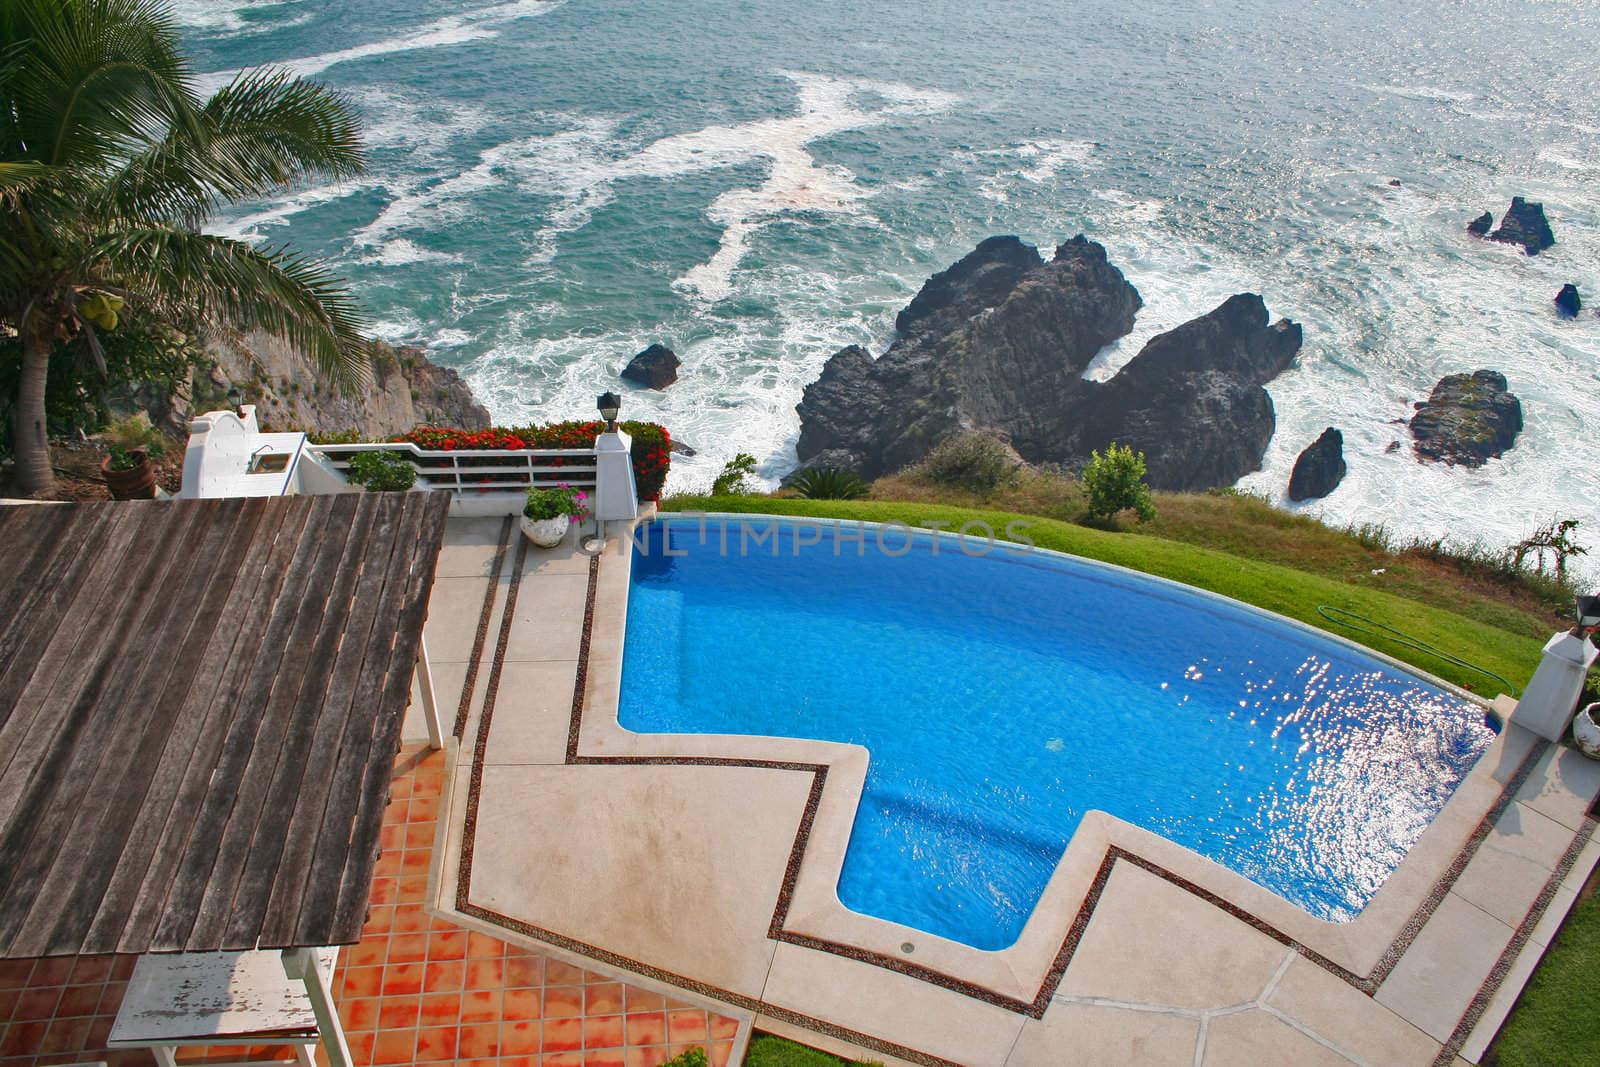 Luxury tropical pool overlooking ocean